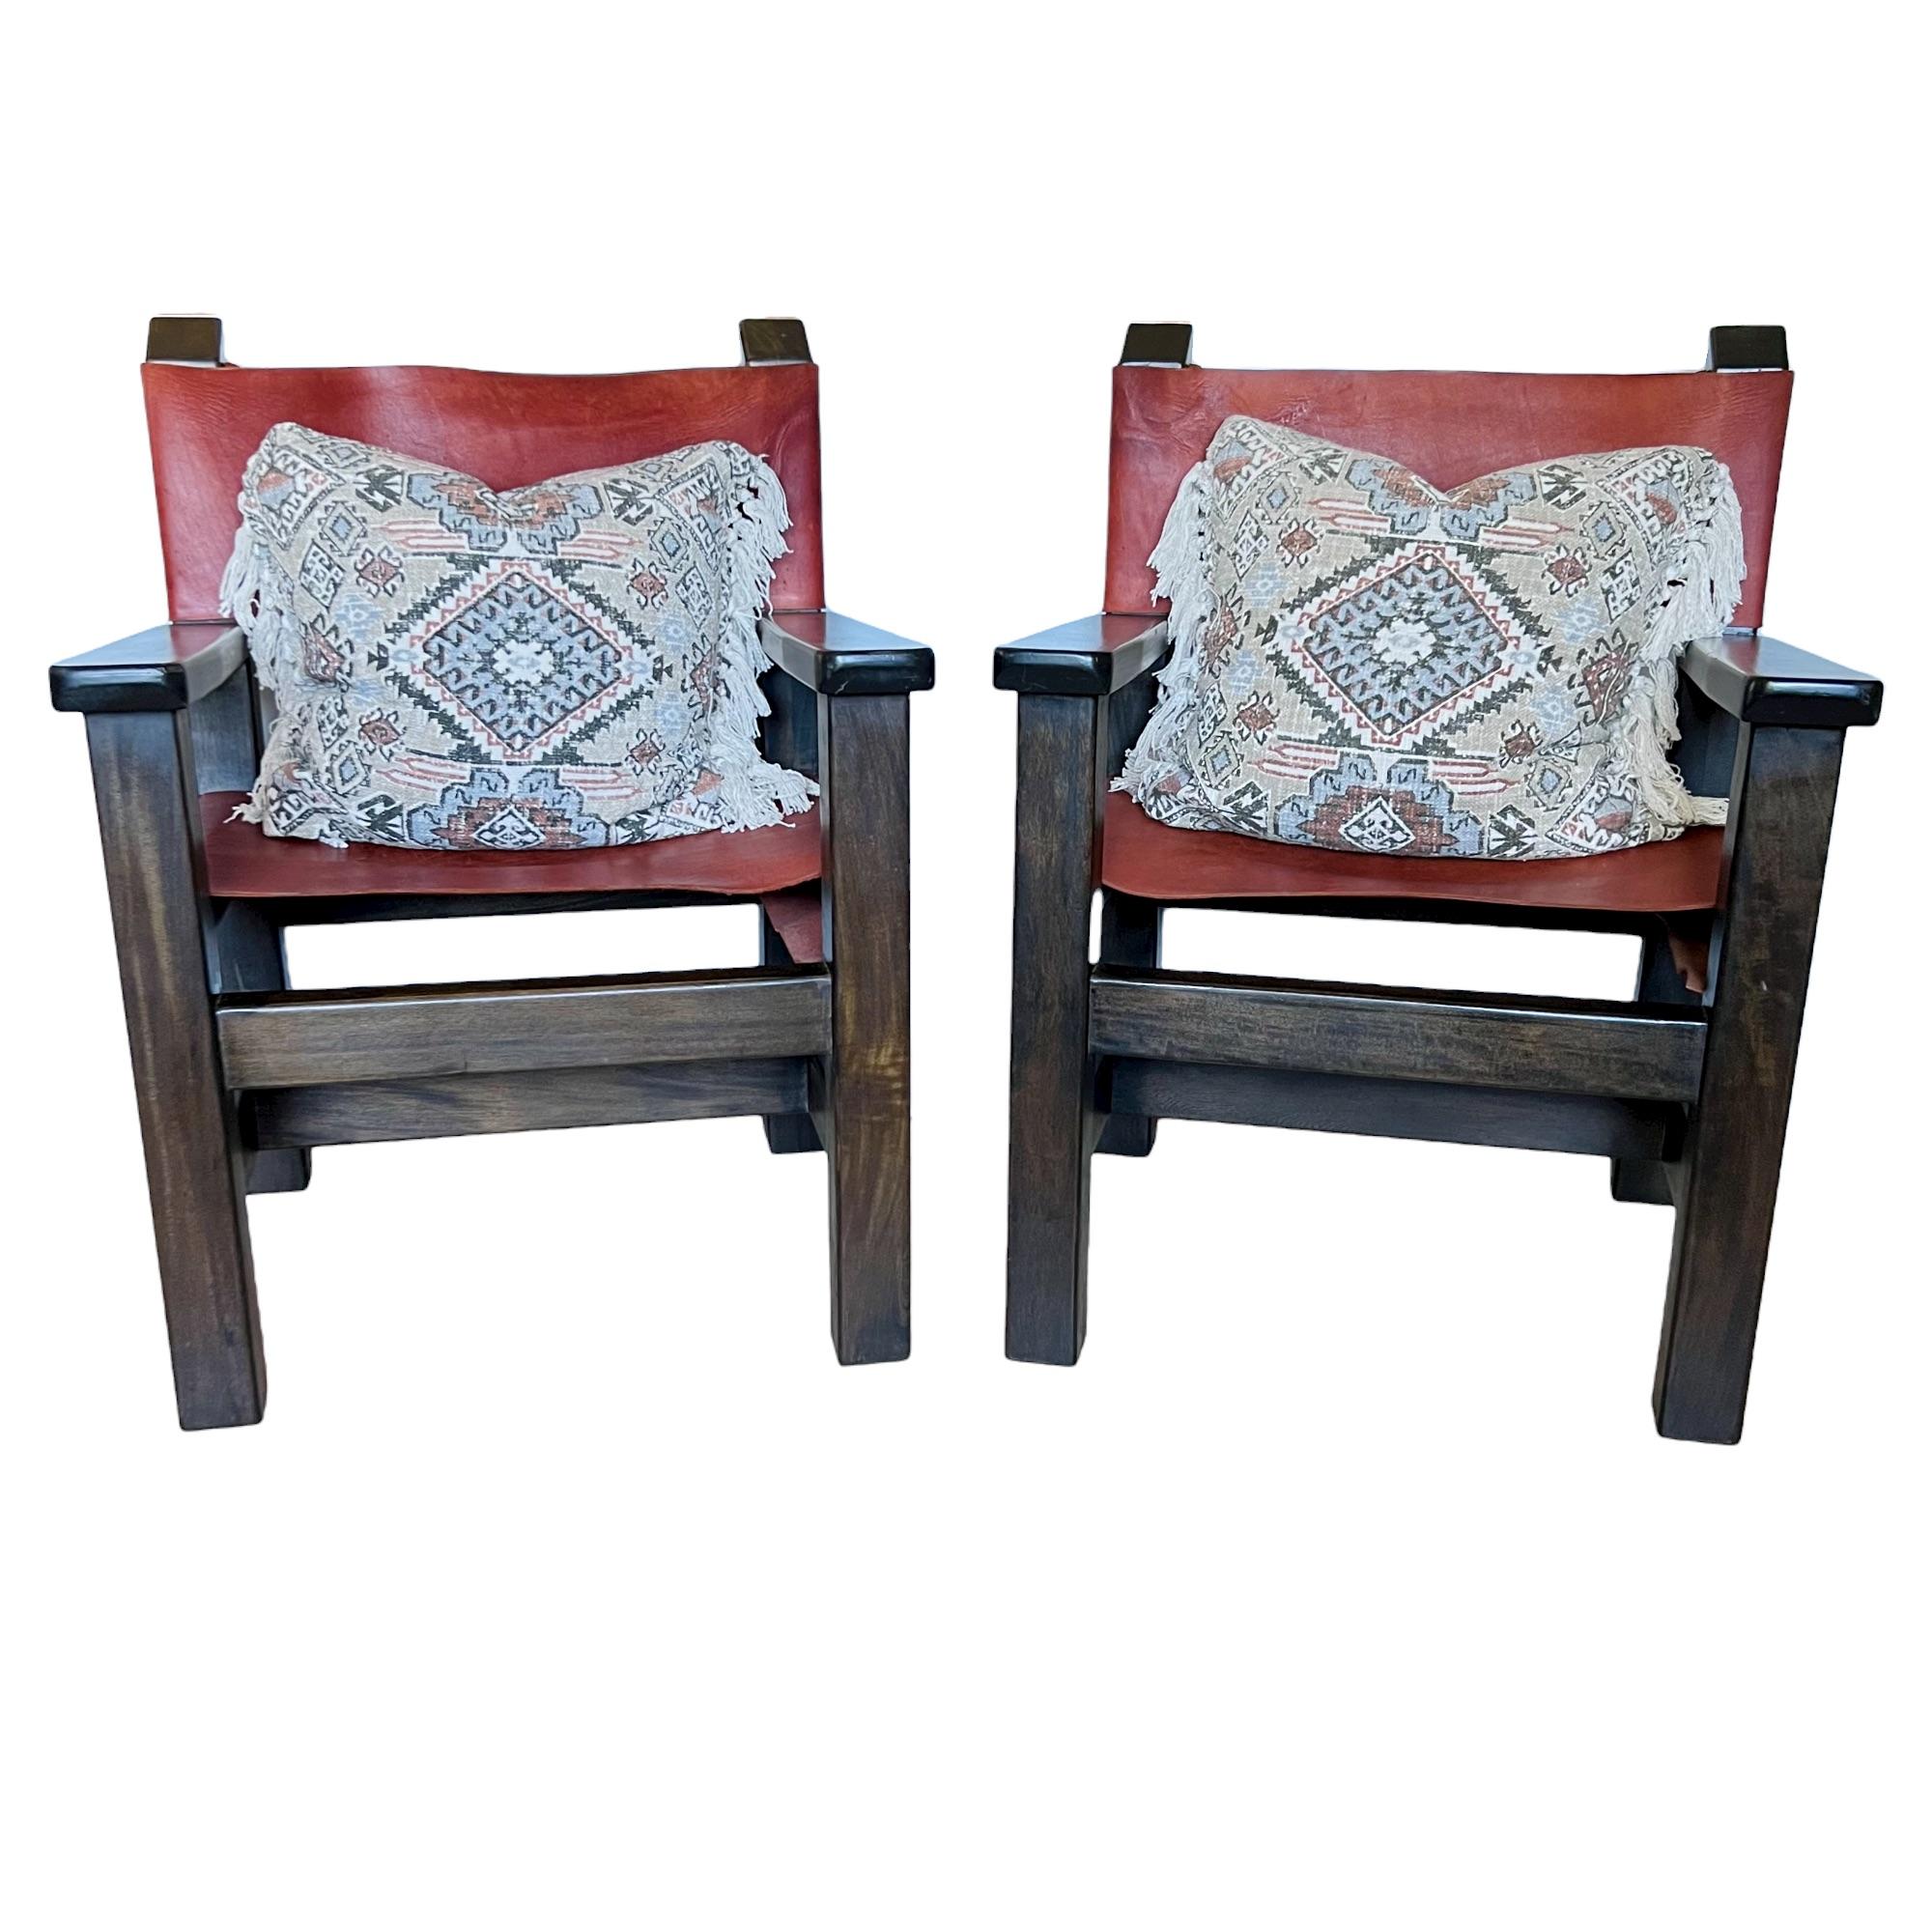 Une paire de grands et robustes fauteuils de style directeur brutaliste espagnol de la fin du 20e siècle. Cadres en bois foncé avec dossiers et sièges en cuir de selle cognac.

Dimensions : 26,75